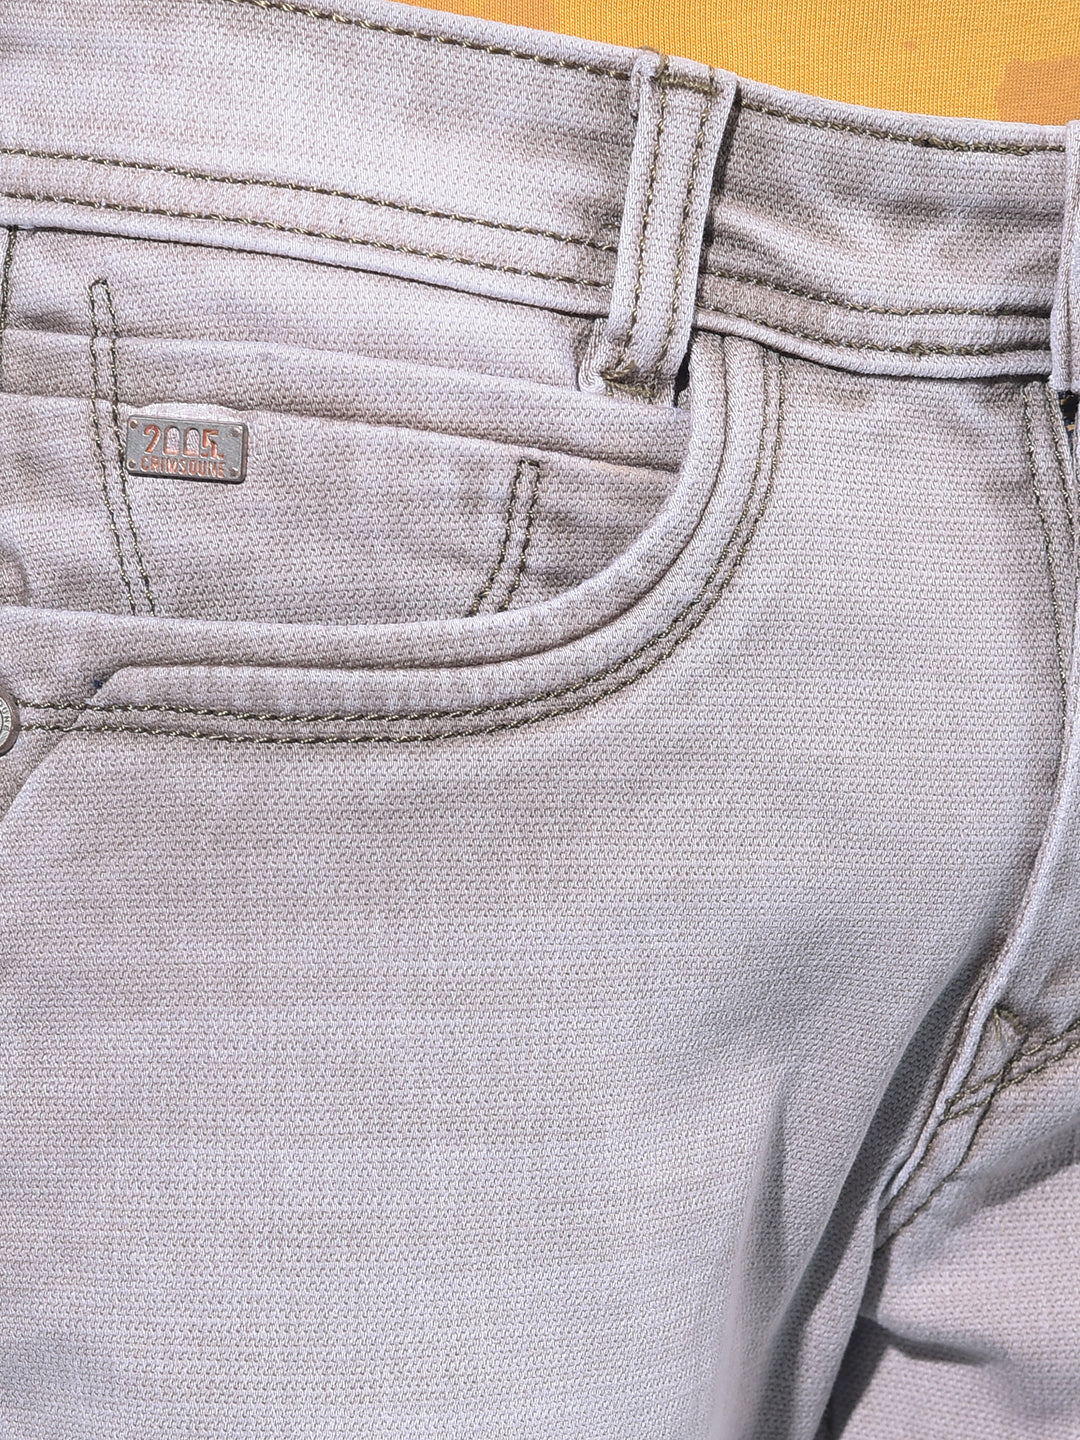 Grey Stretchable Cotton Jeans-Boys Jeans-Crimsoune Club